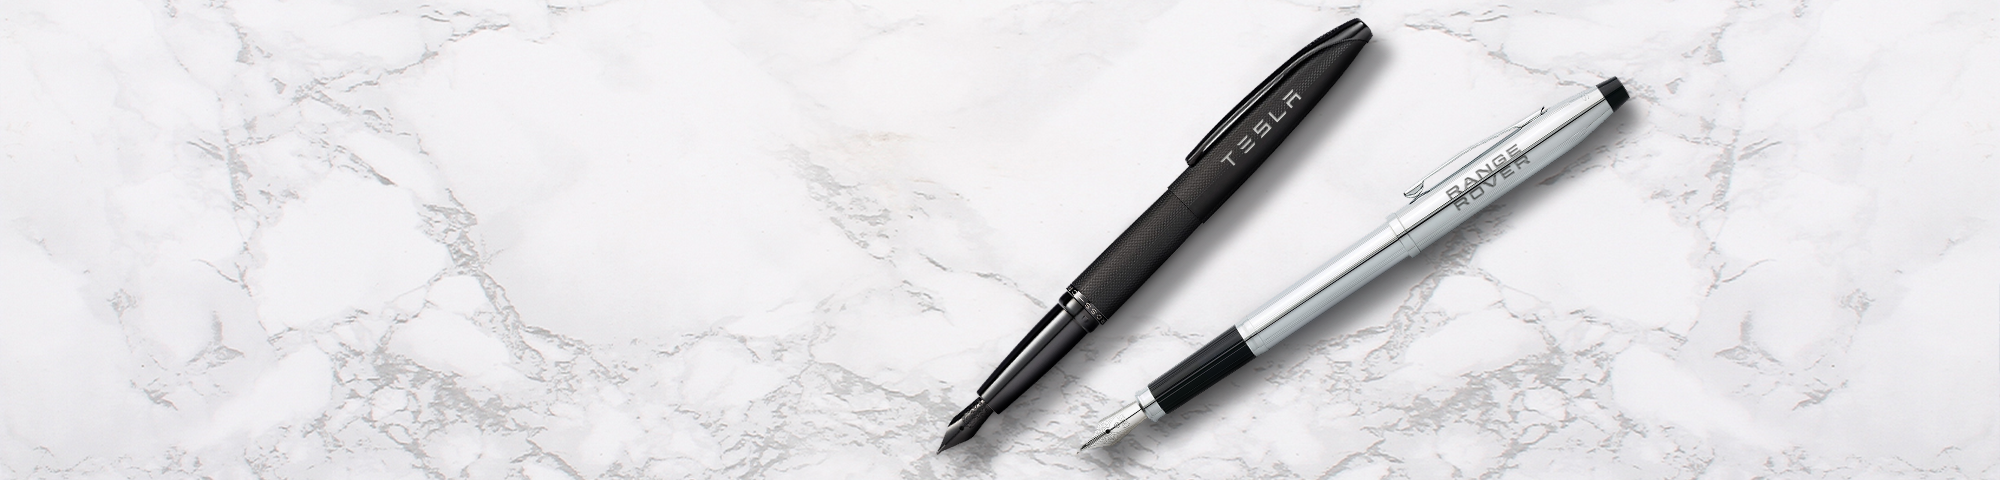 Luxury Engraved Pens - Desktop